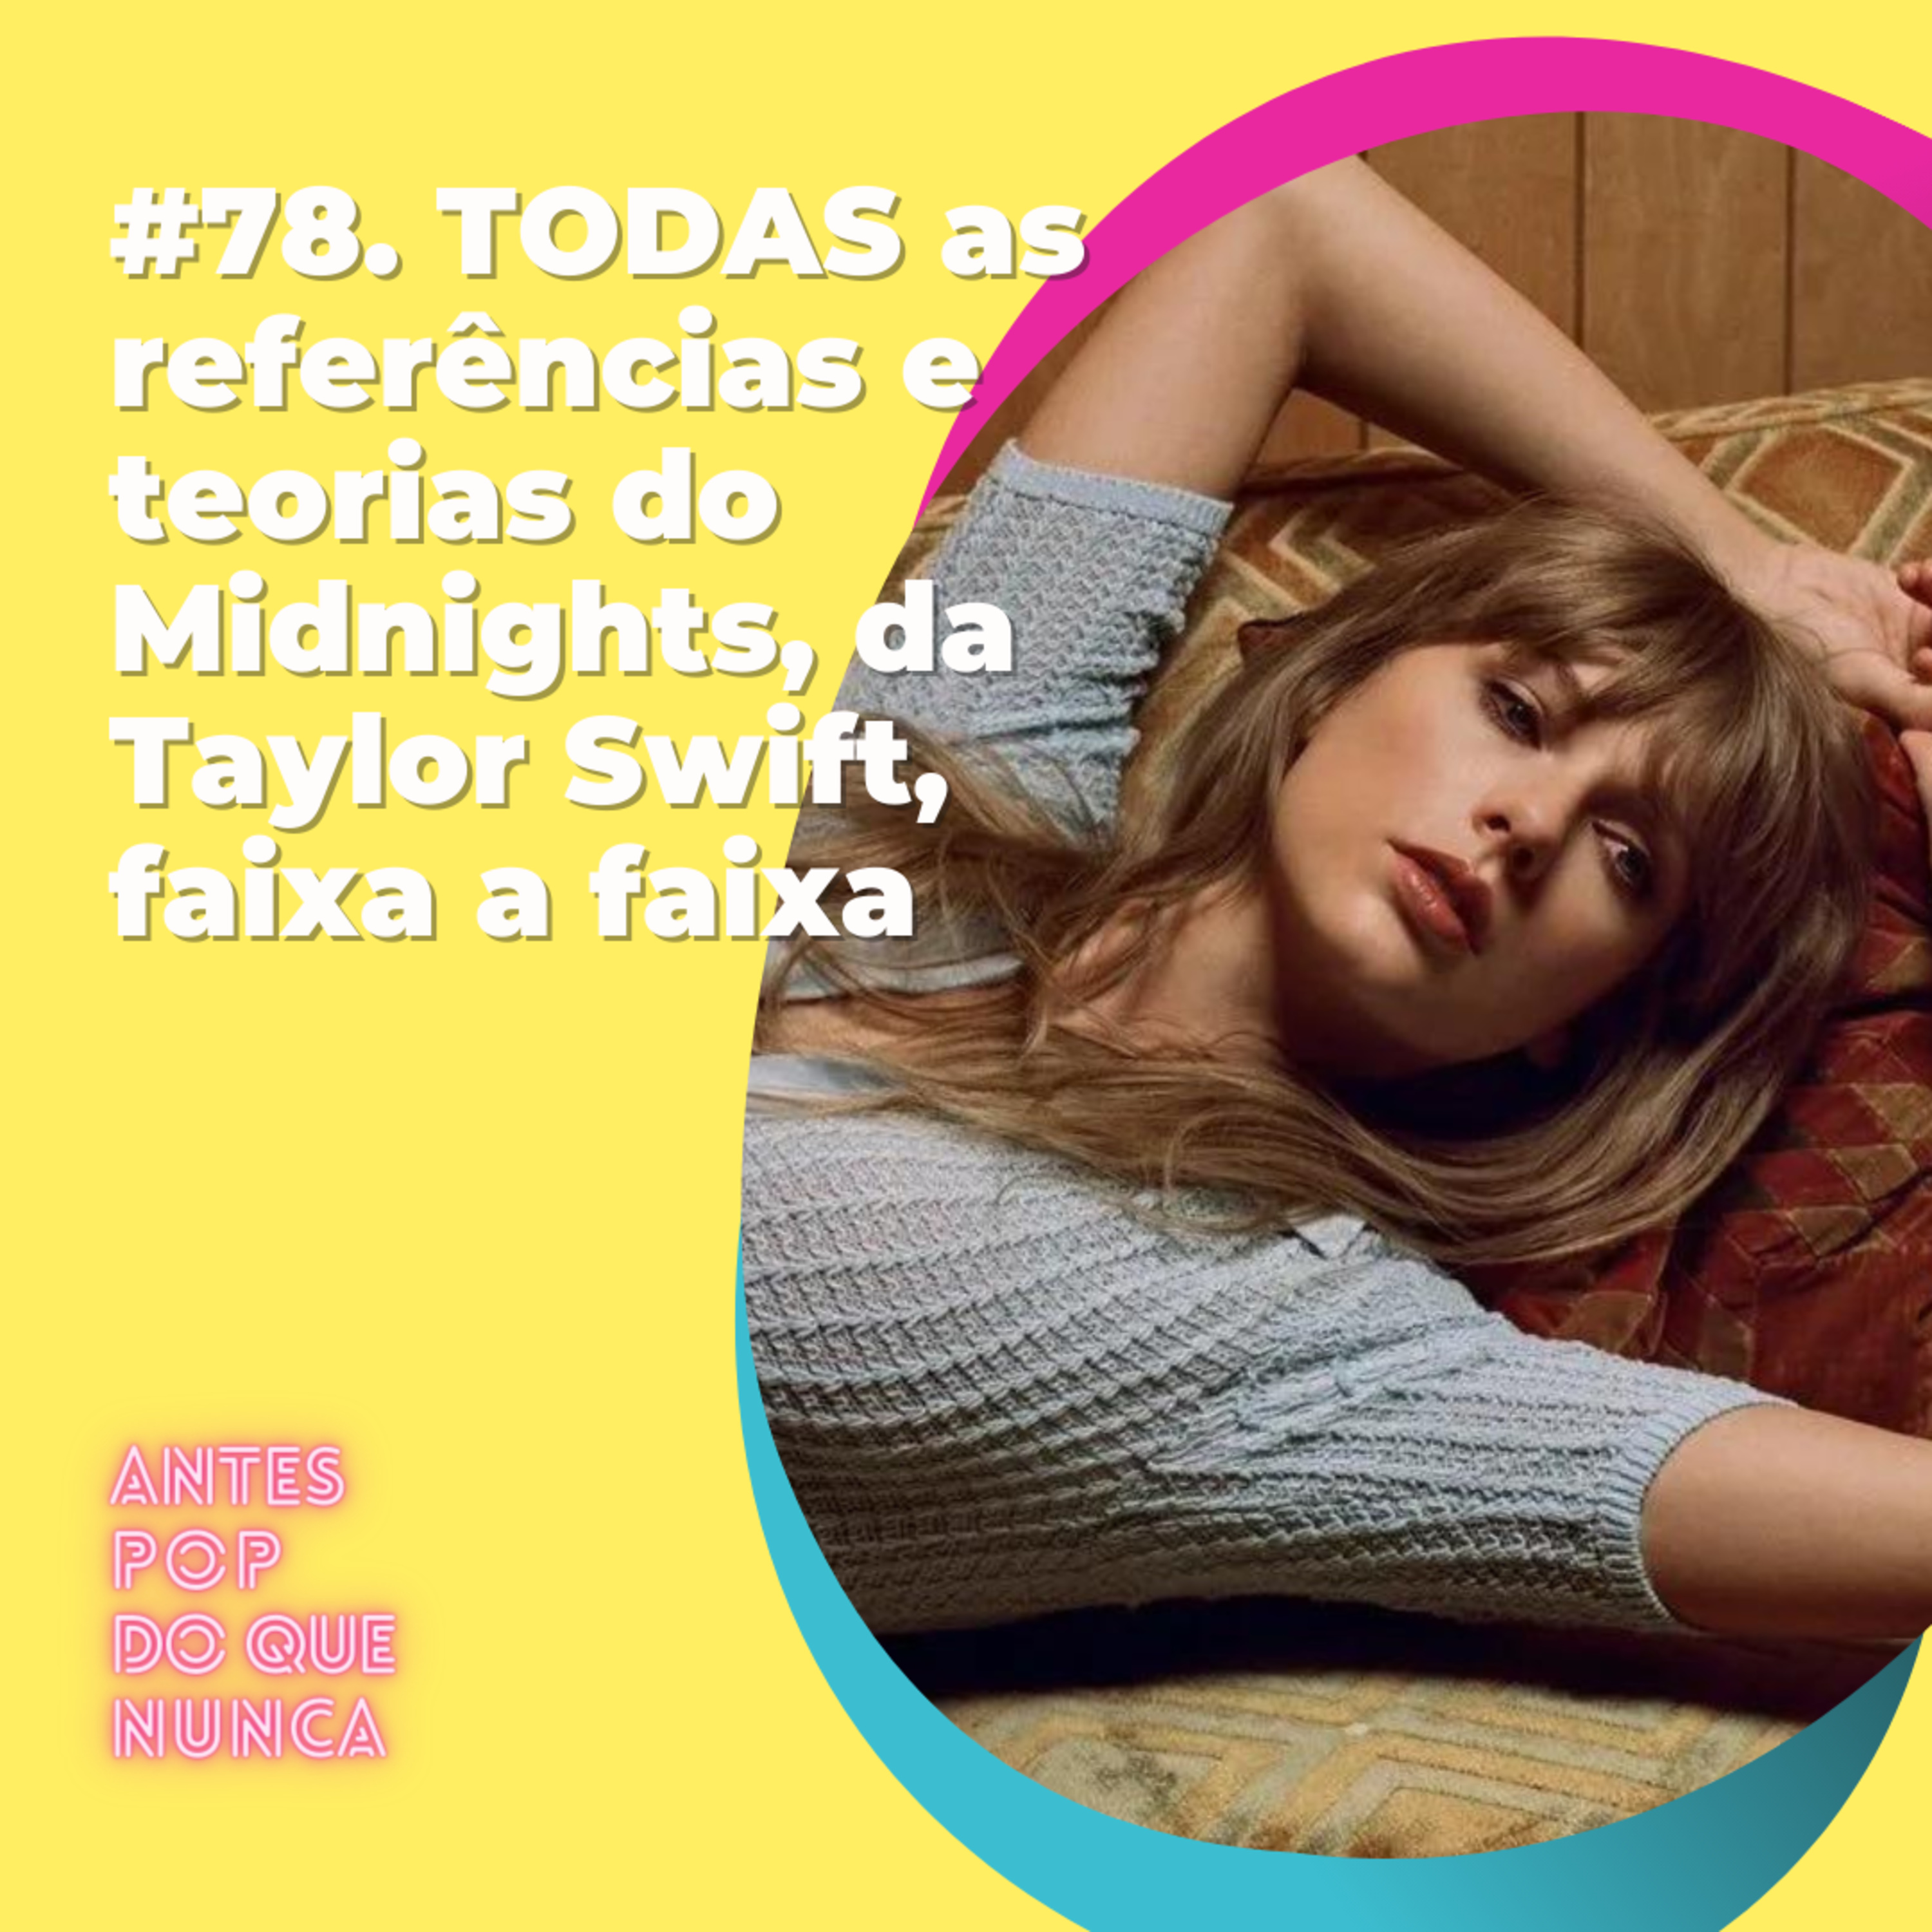 #78. TODAS as referências e teorias do Midnights, da Taylor Swift, faixa a faixa